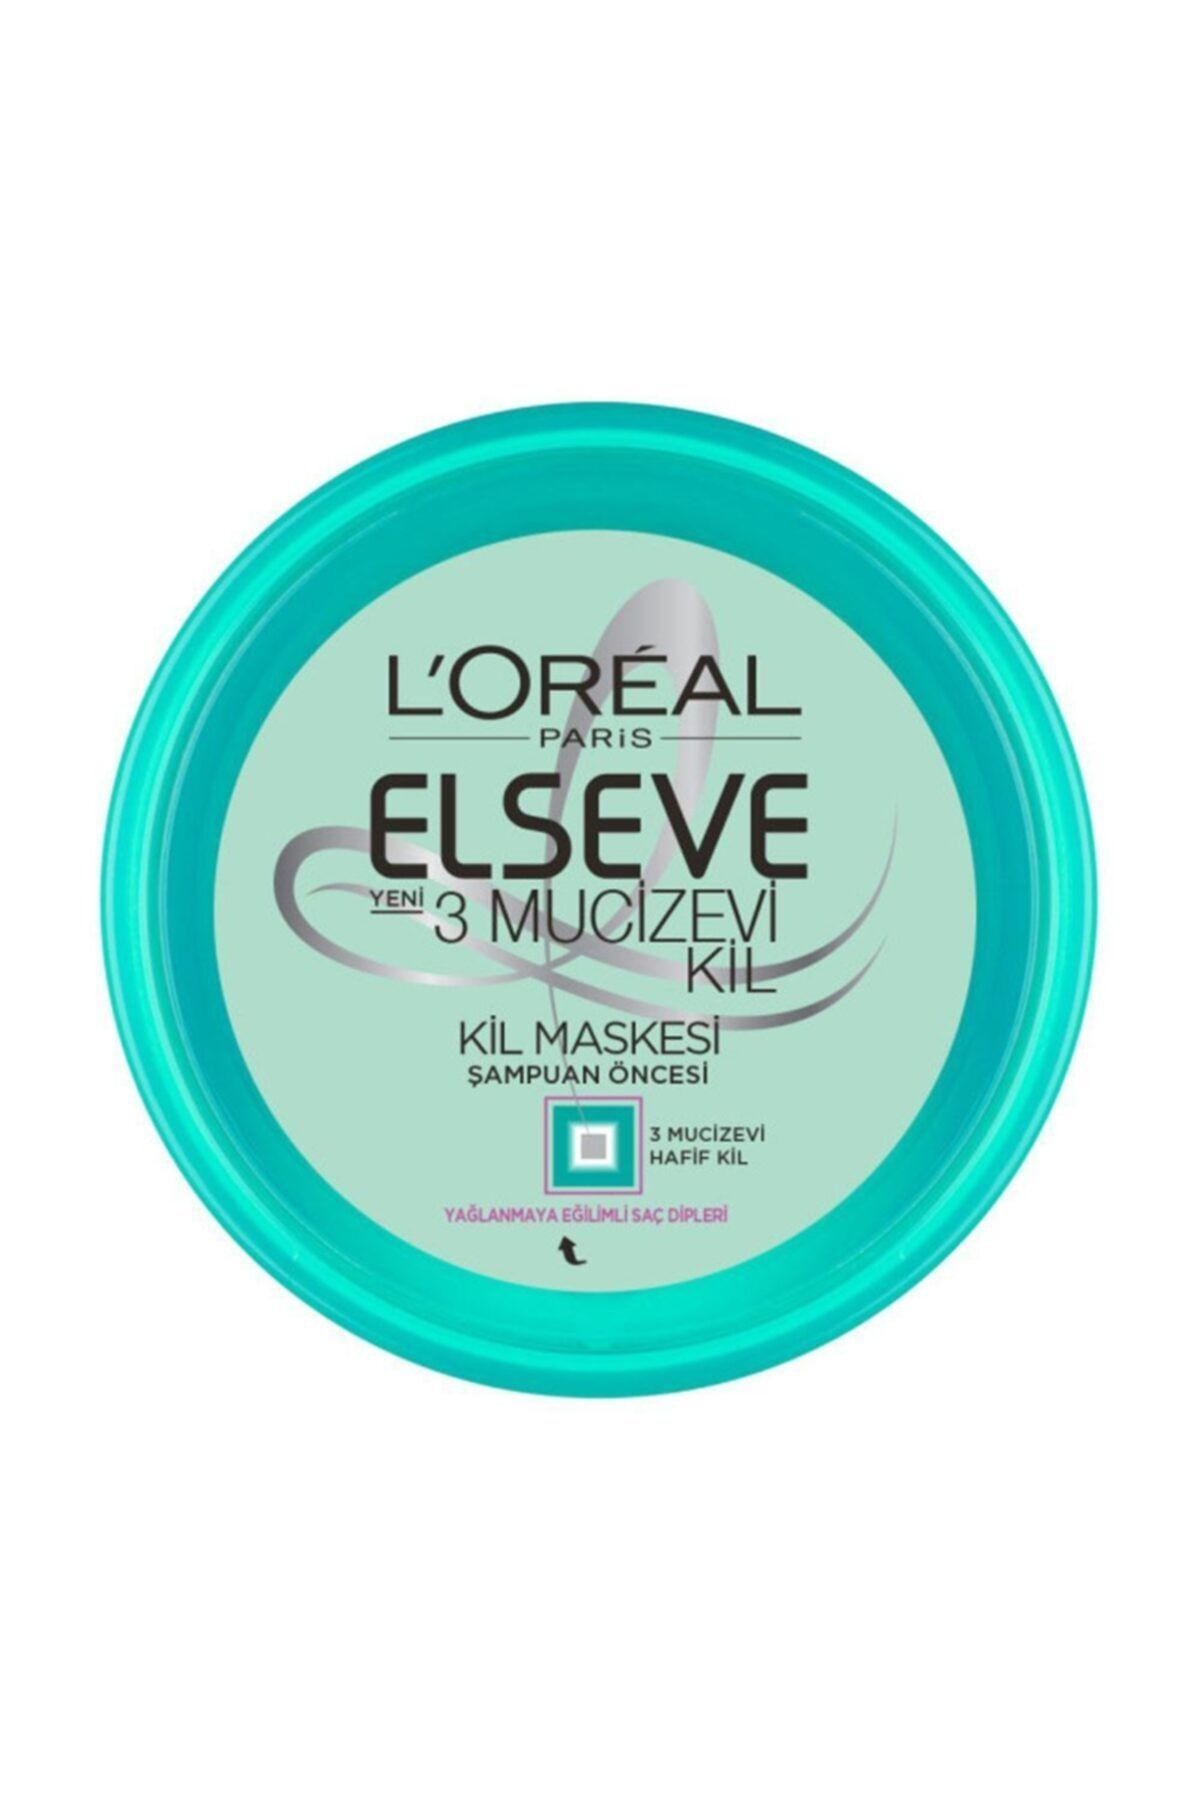 Elseve L'oréal Paris 3 Mucizevi Kil Banyo Öncesi Kil Maskesi 150 ml